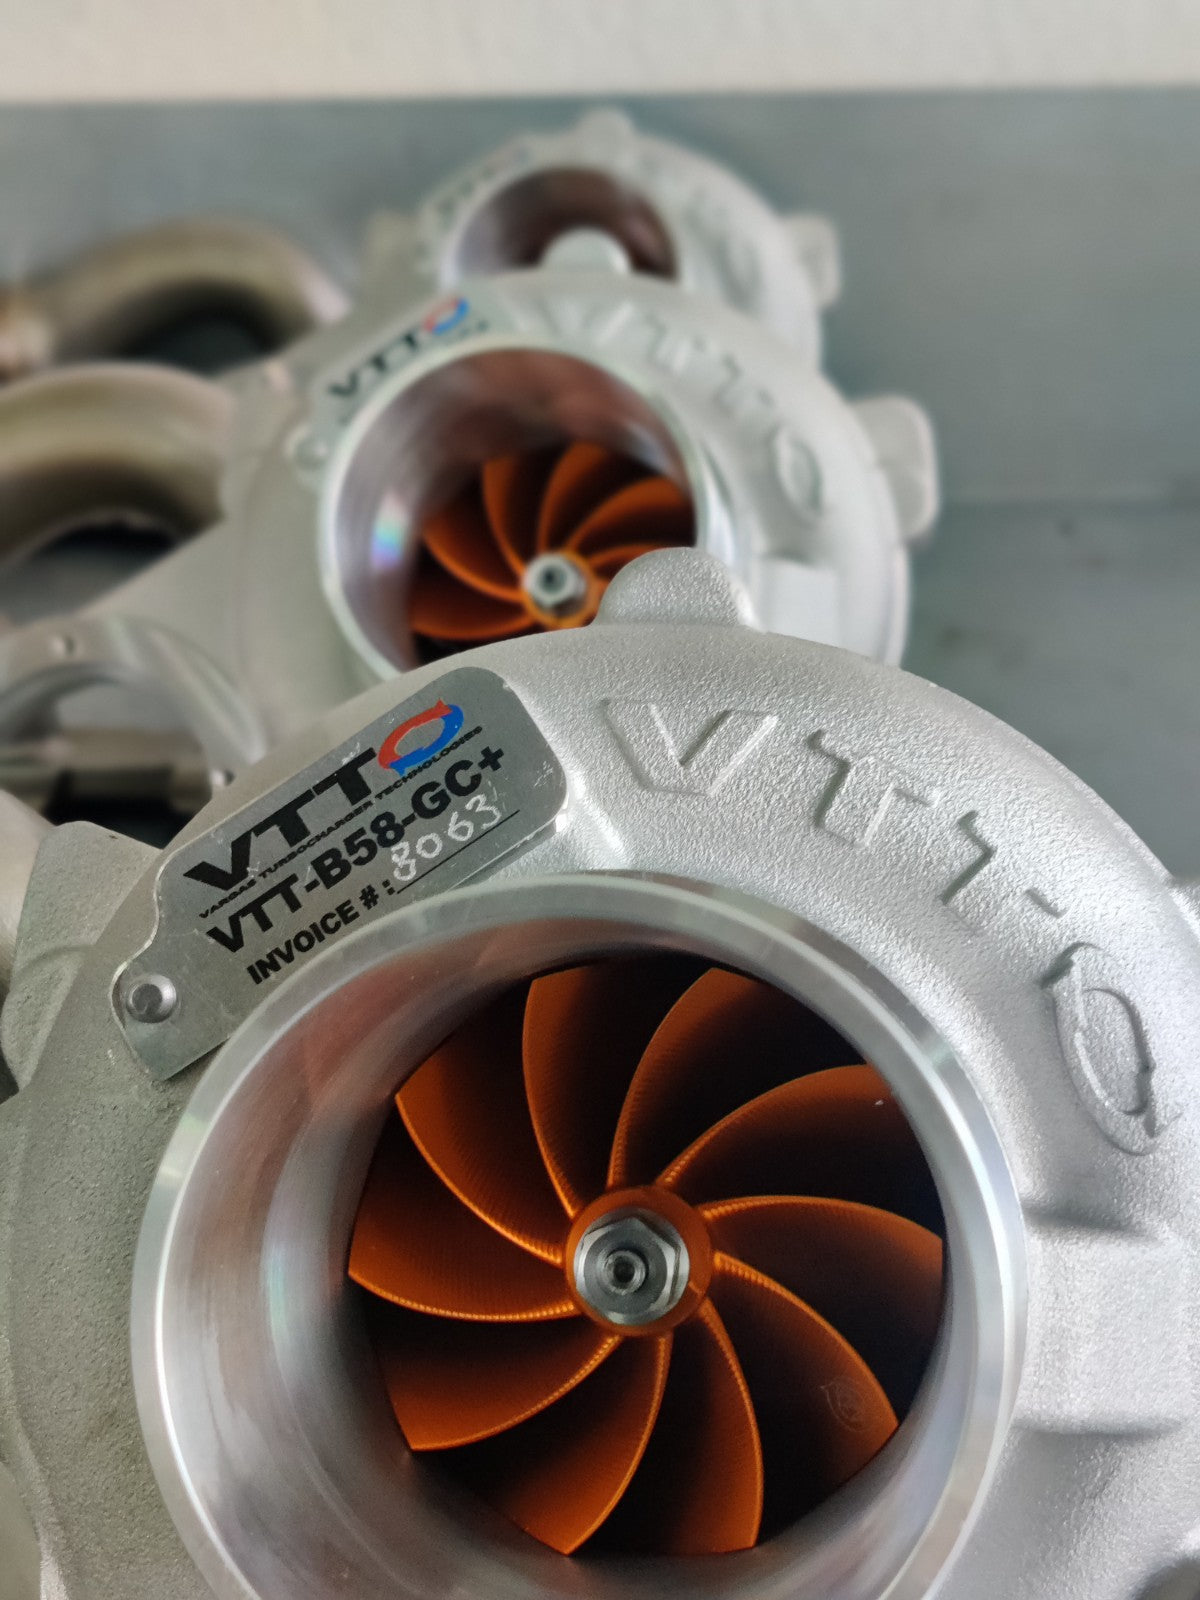 VTT - atualização do turbocompressor B58 GC/GC+